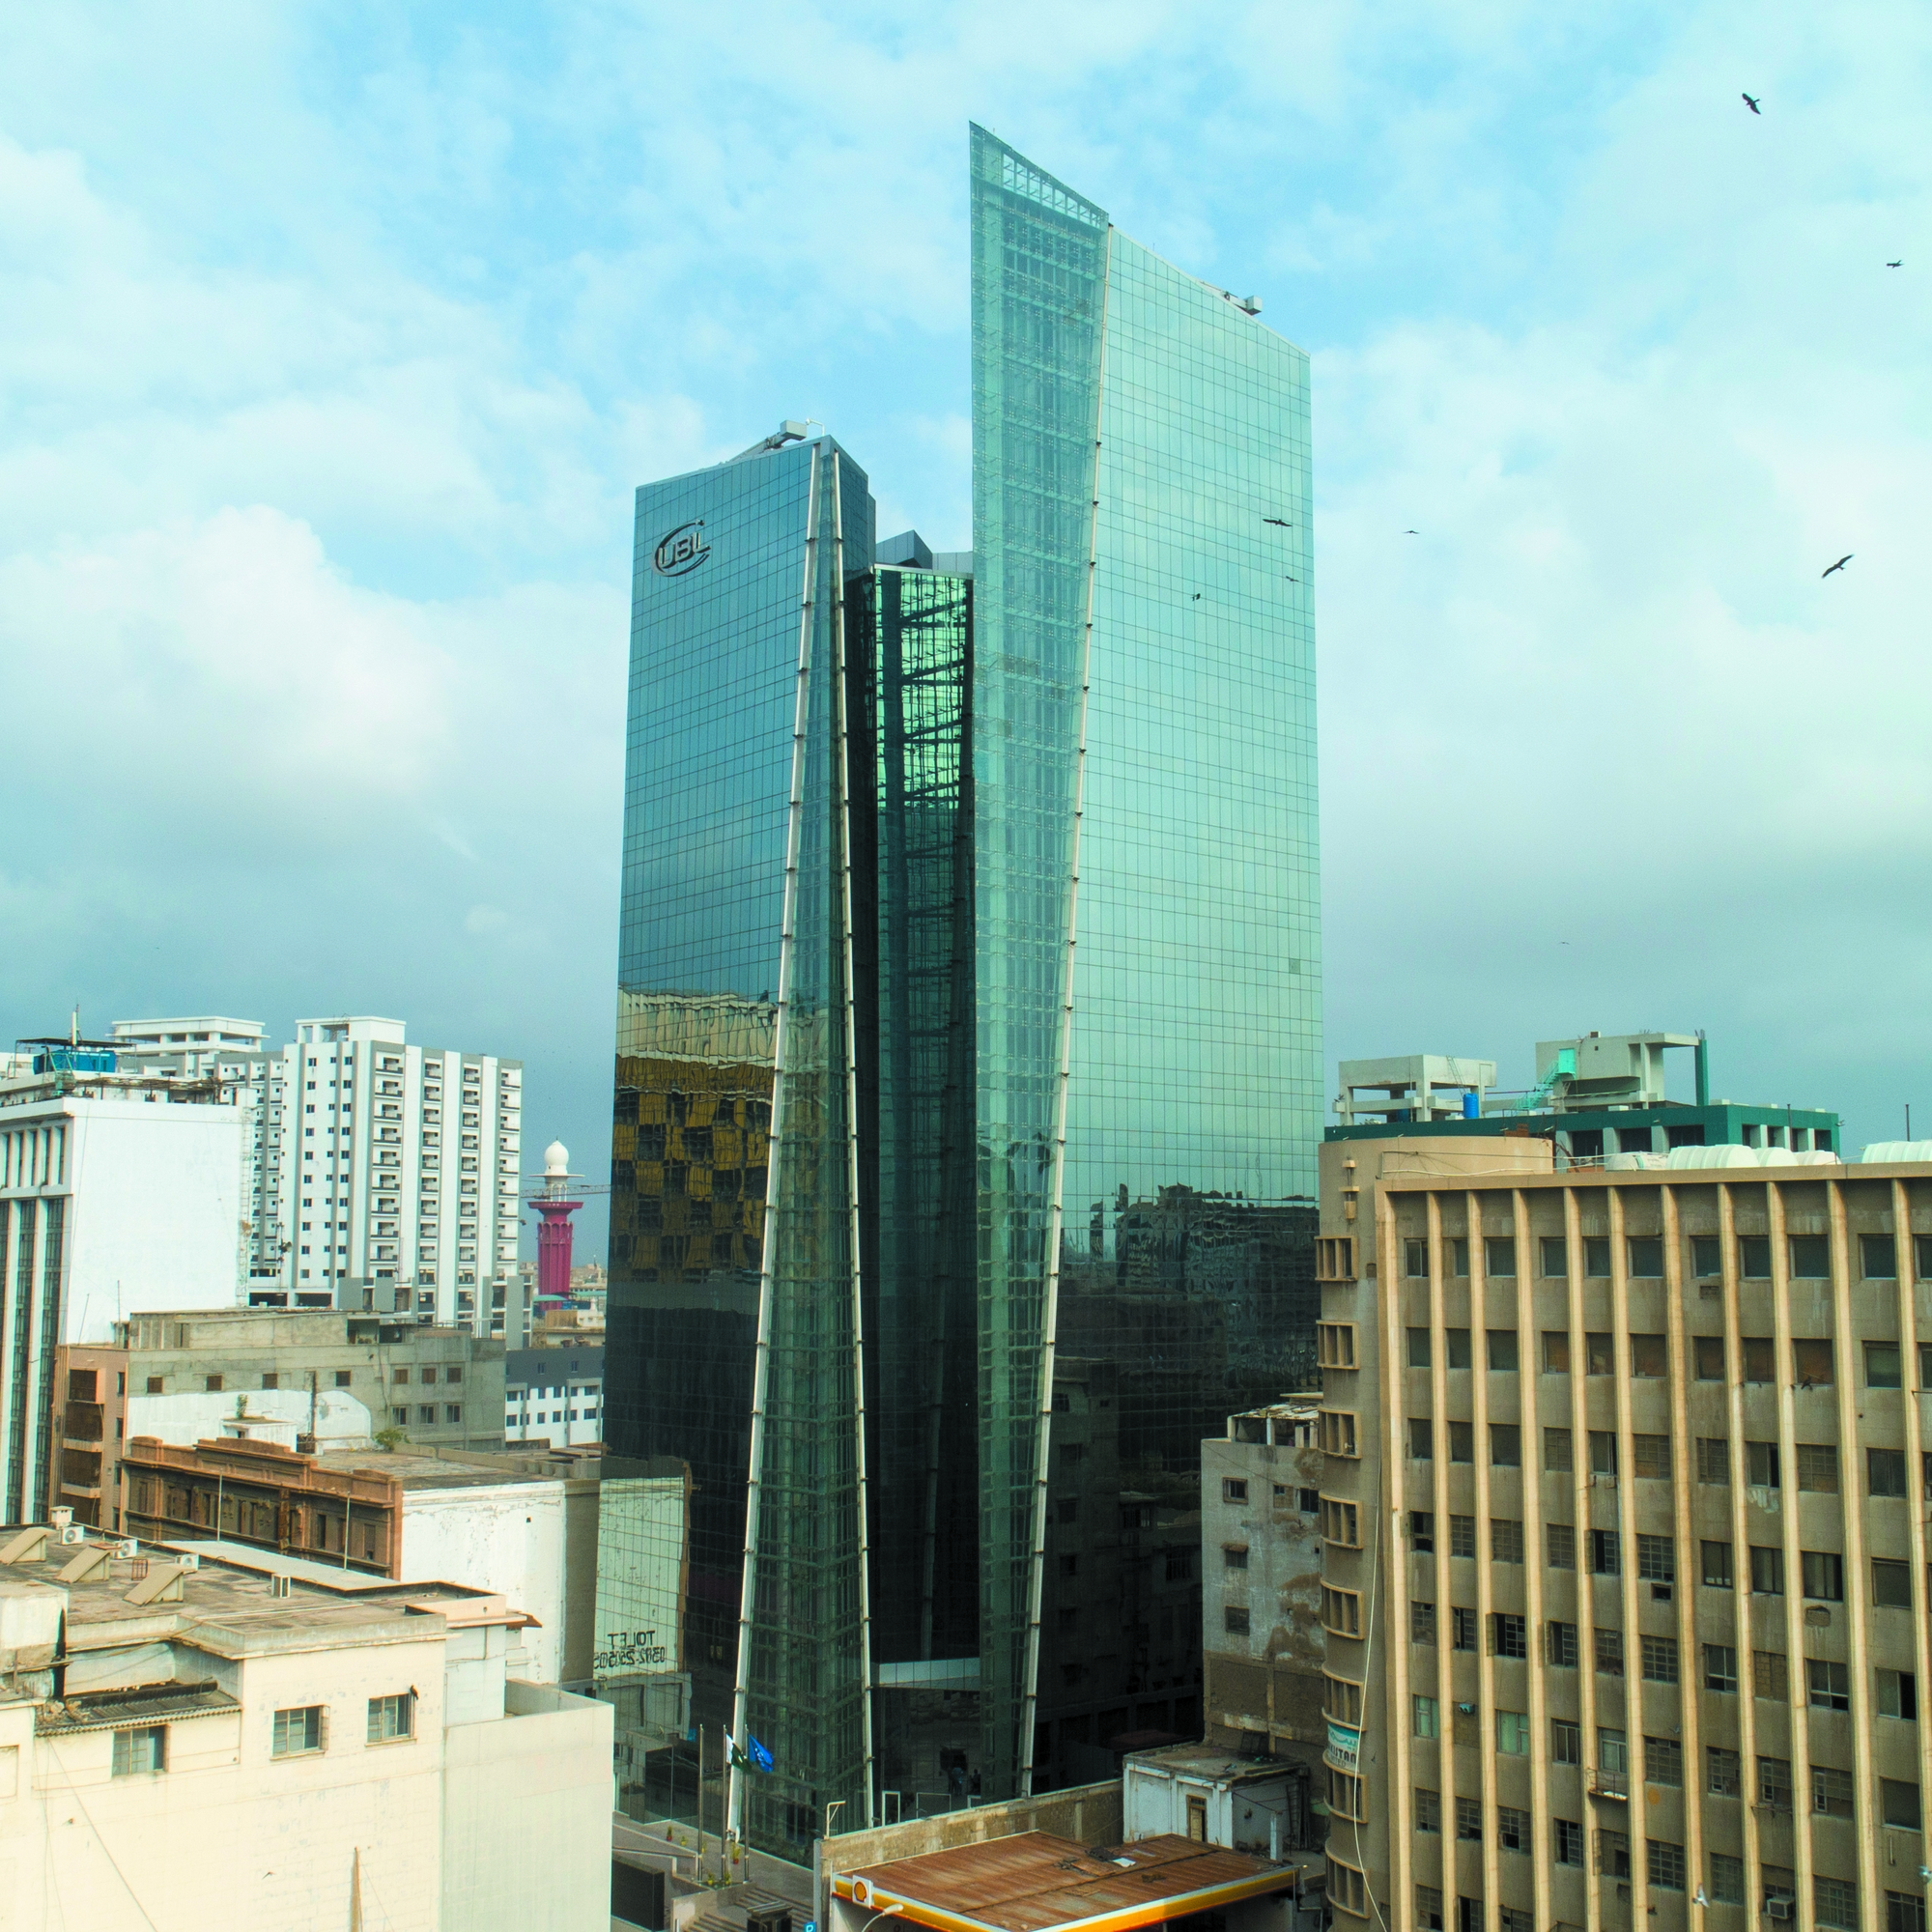  UBL Towers, Karachi, Pakistan -Image 2